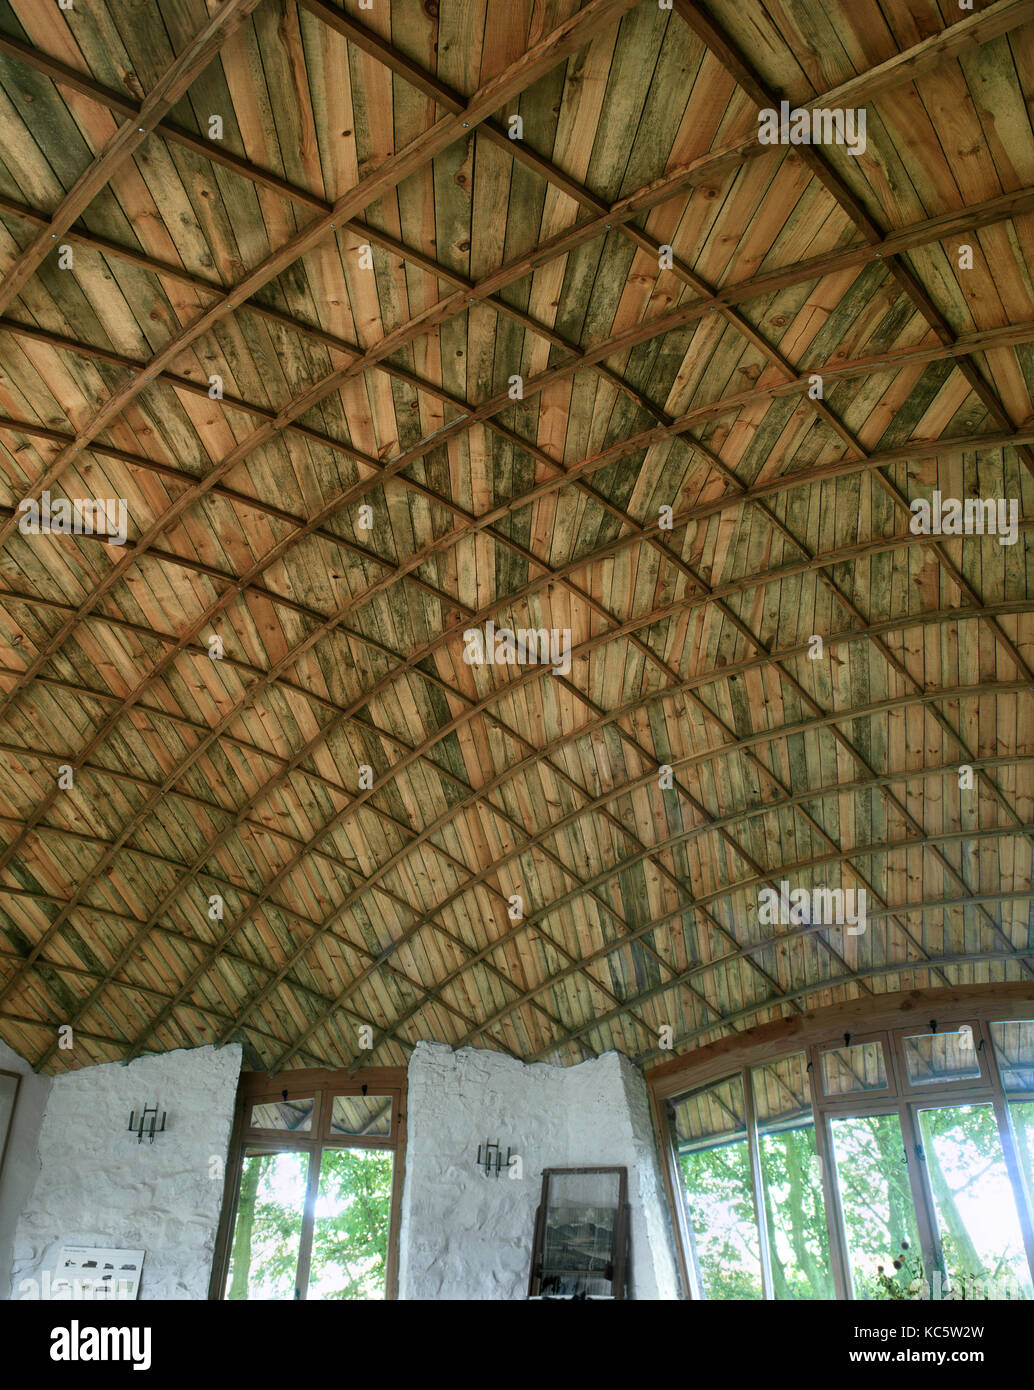 Vista interna del tetto gridshell che copre il laboratorio artigianale presso il progetto pishwanton, gestito dalle scienze della vita la fiducia, East Lothian, Scozia. Foto Stock